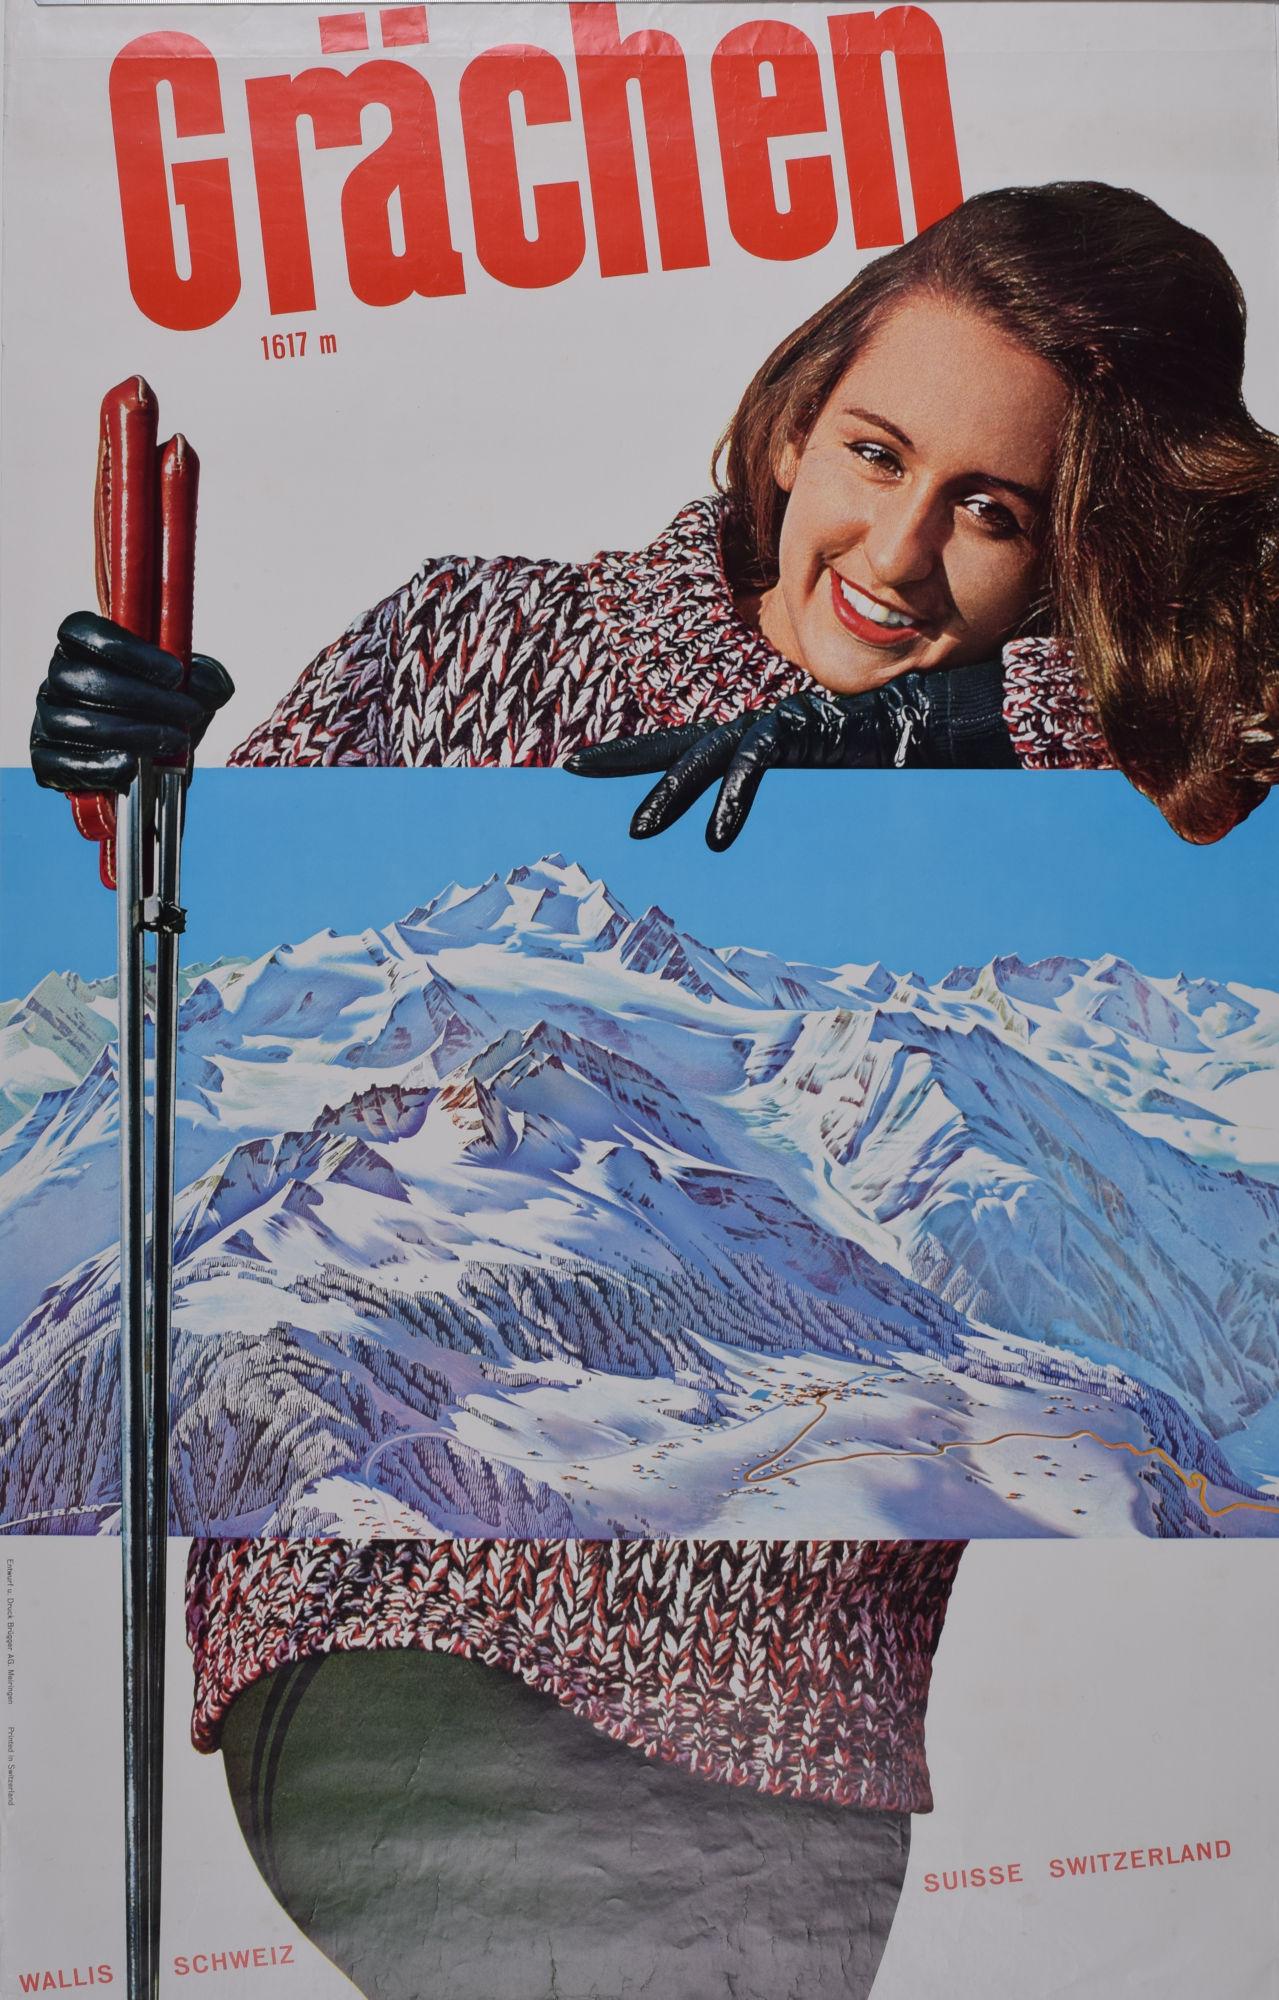 Grächen, Valais / Wallis, Switzerland original vintage skiing poster - Print by Unknown